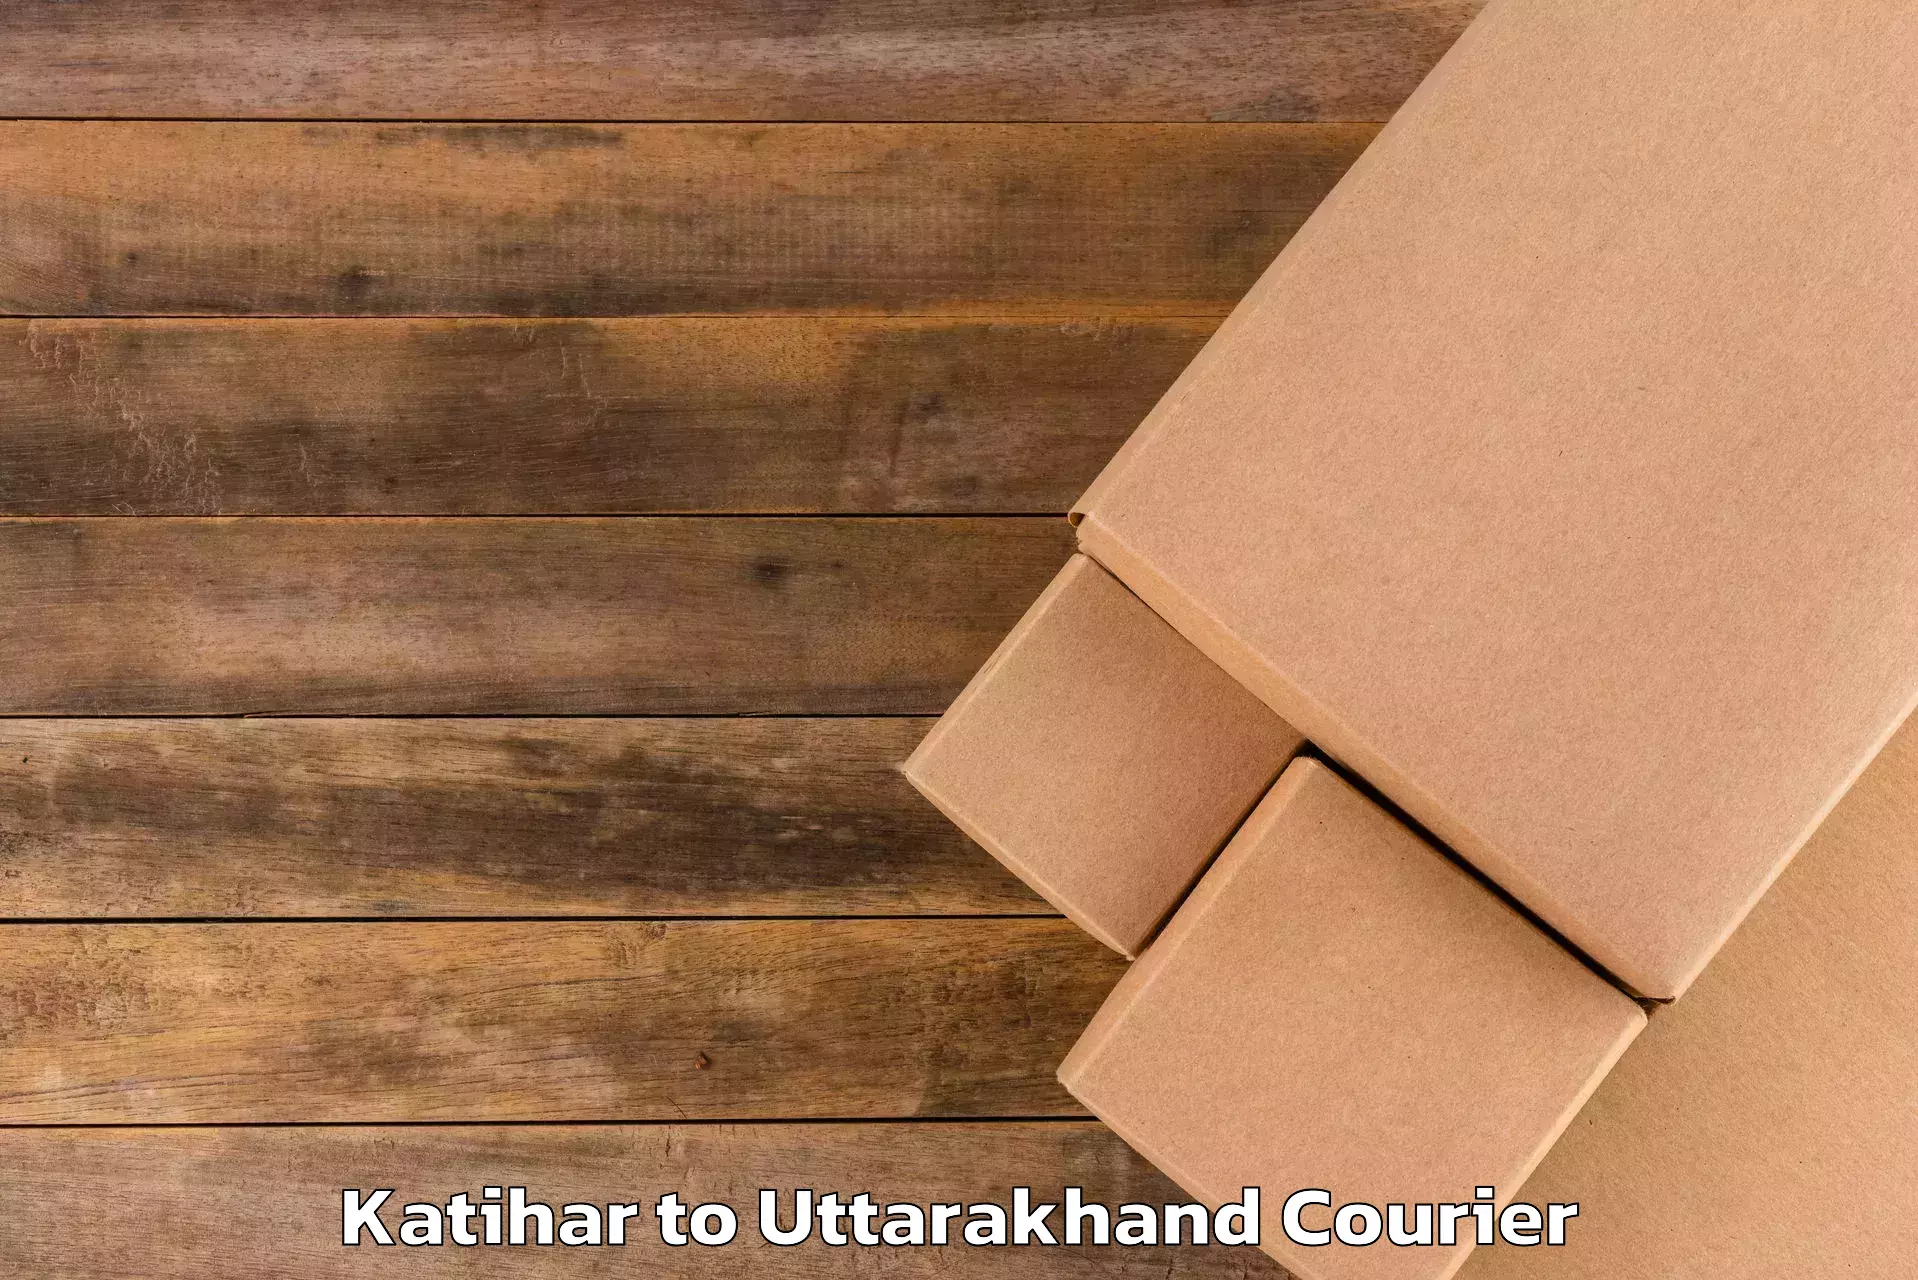 Baggage transport scheduler Katihar to Pithoragarh